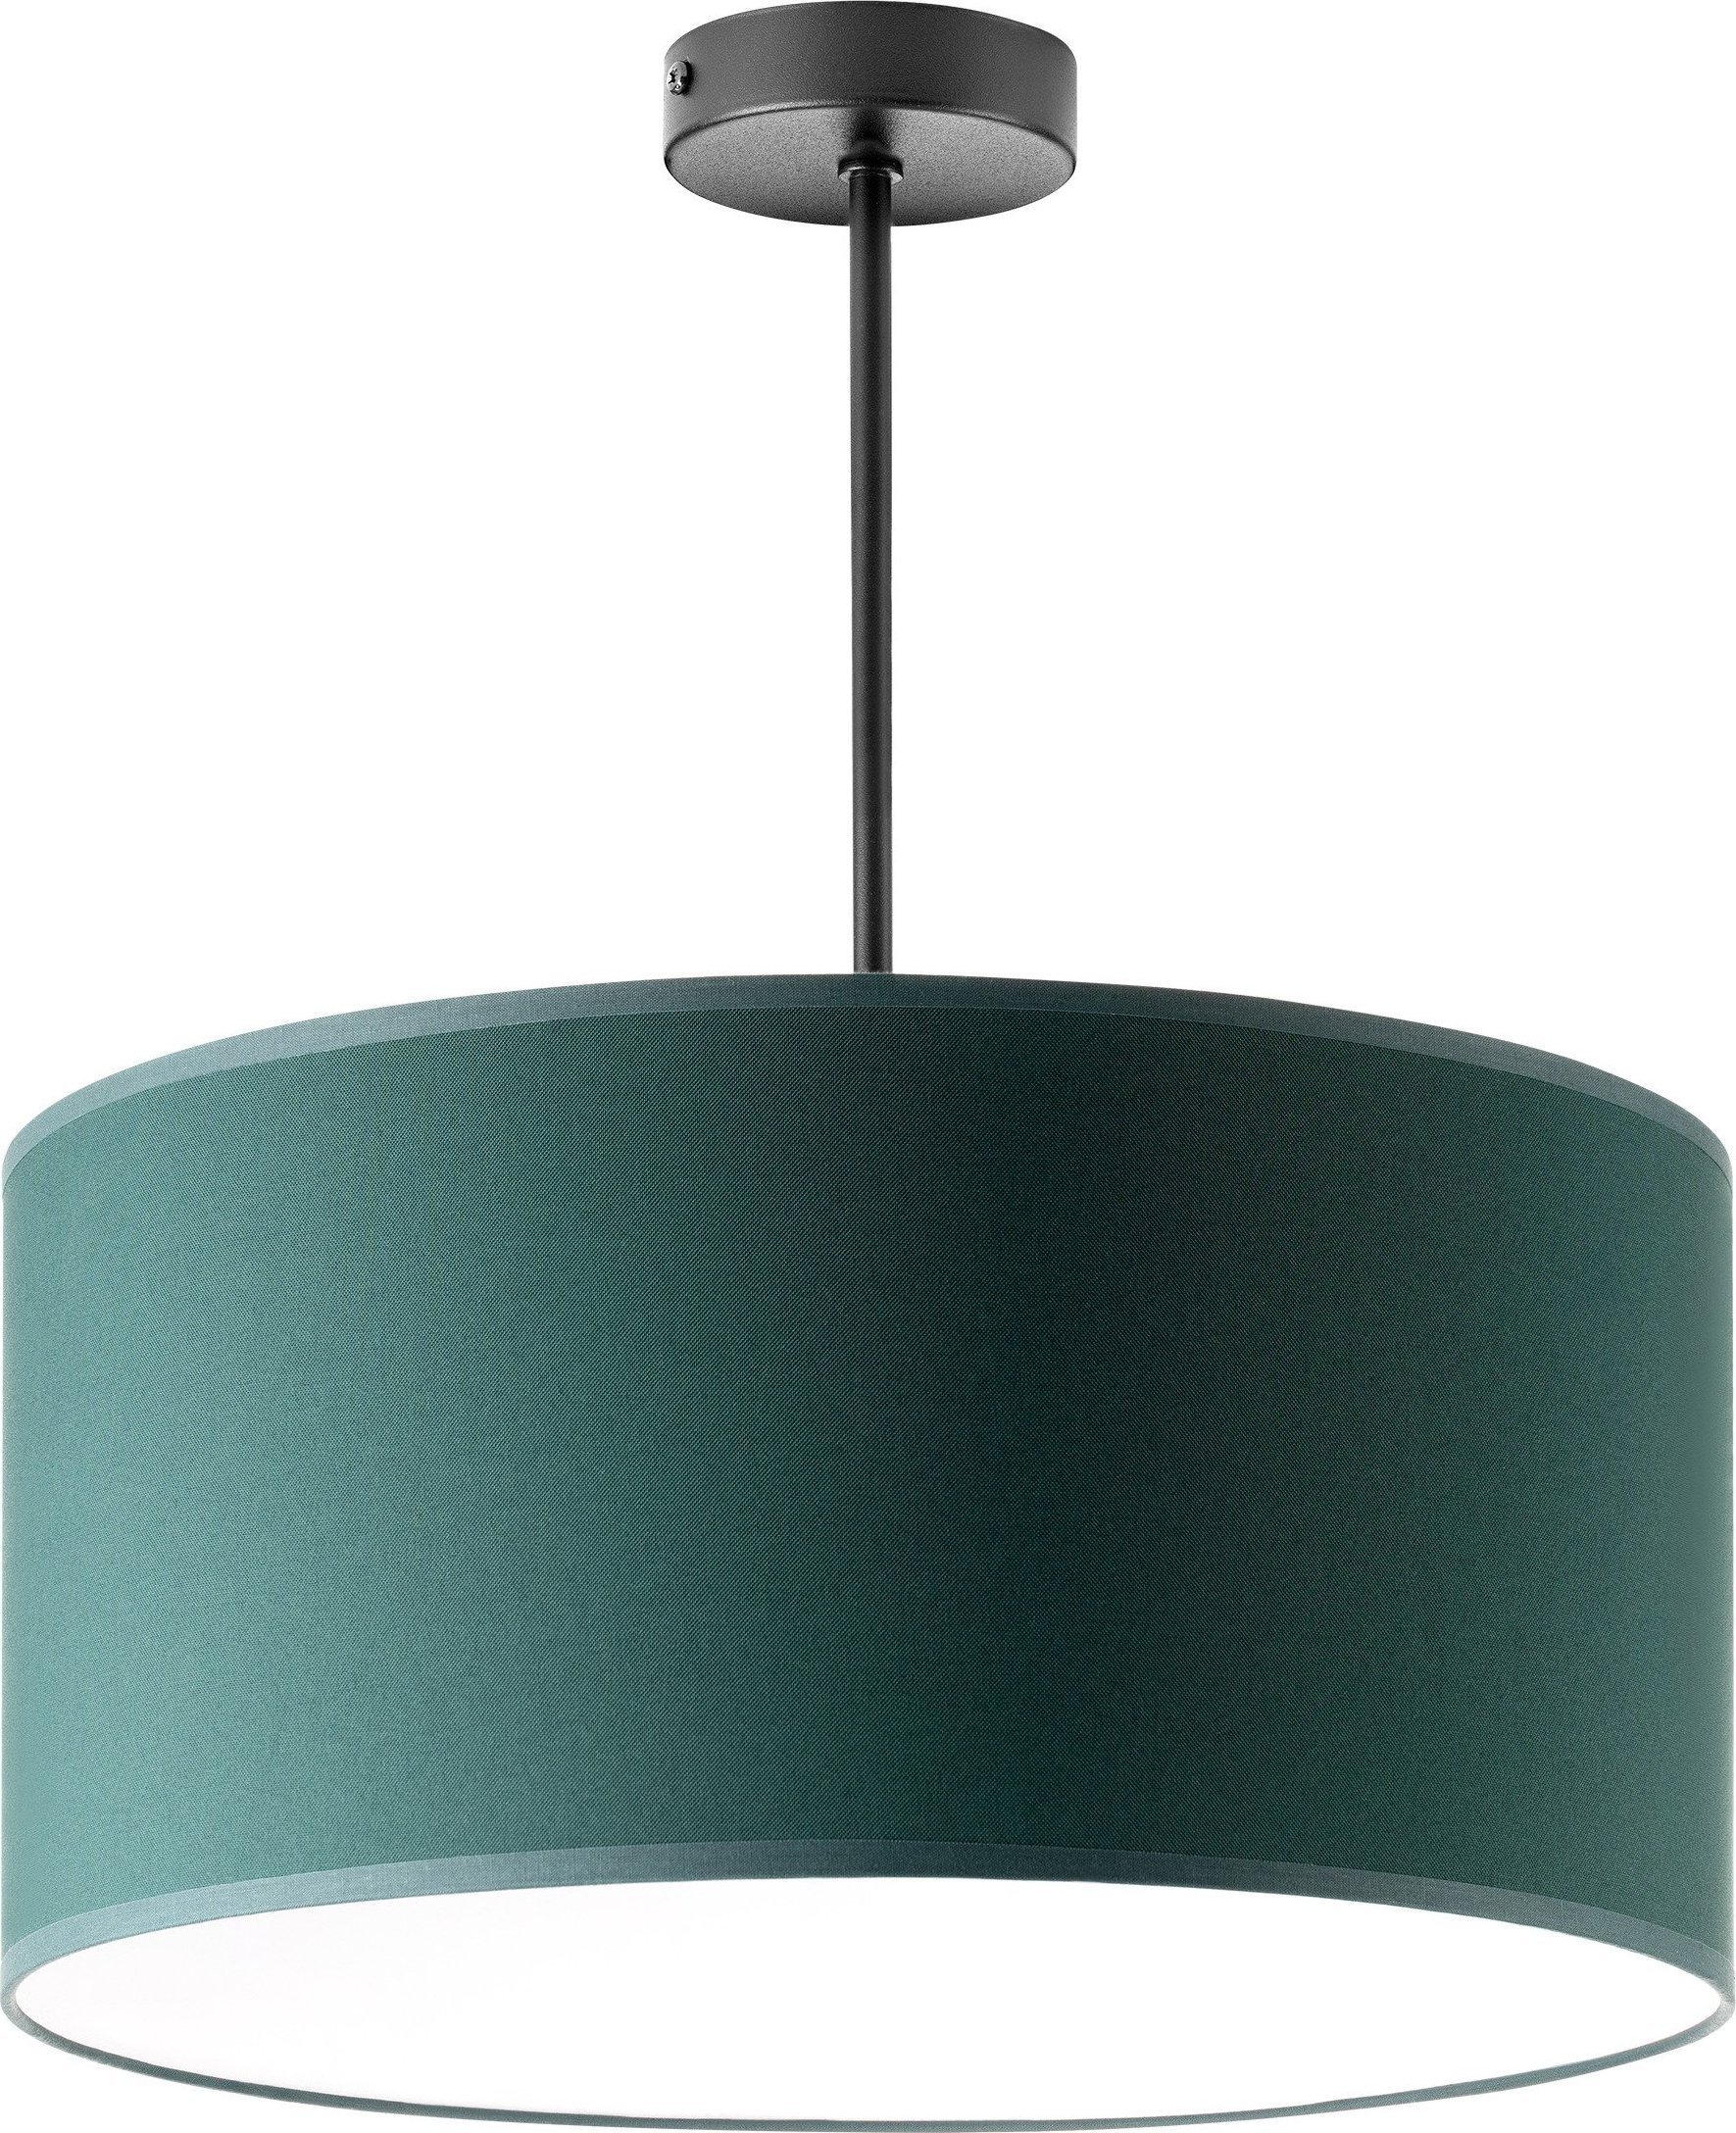 Lampa wisząca Orno ROLLO lampa wisząca, moc max. 1x60W, butelkowa zieleń, krótka